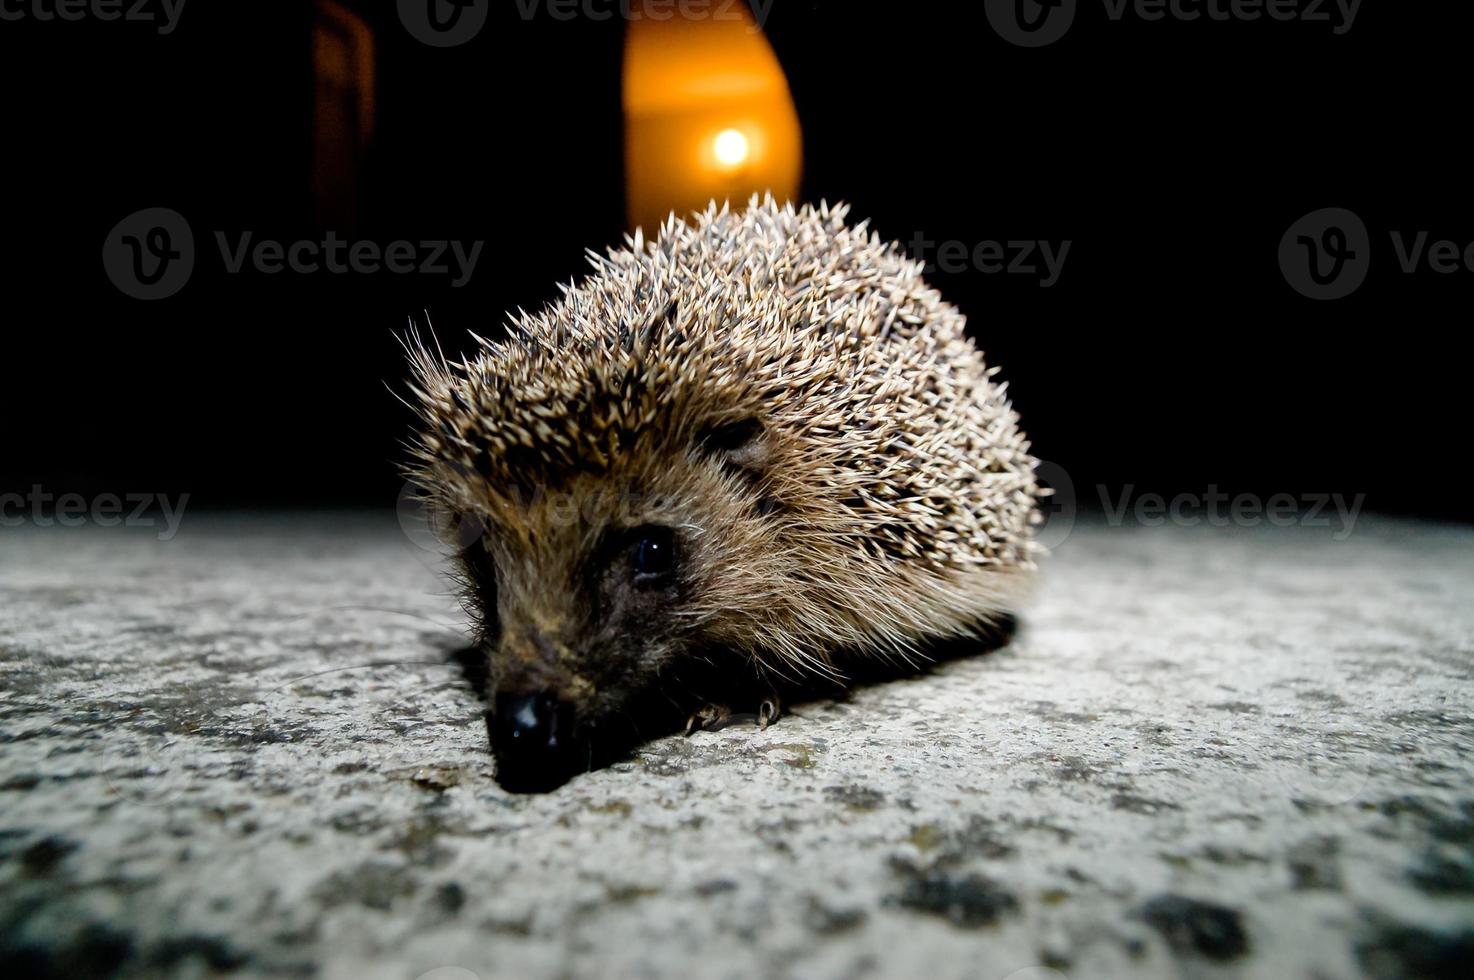 Cute hedgehog close-up photo